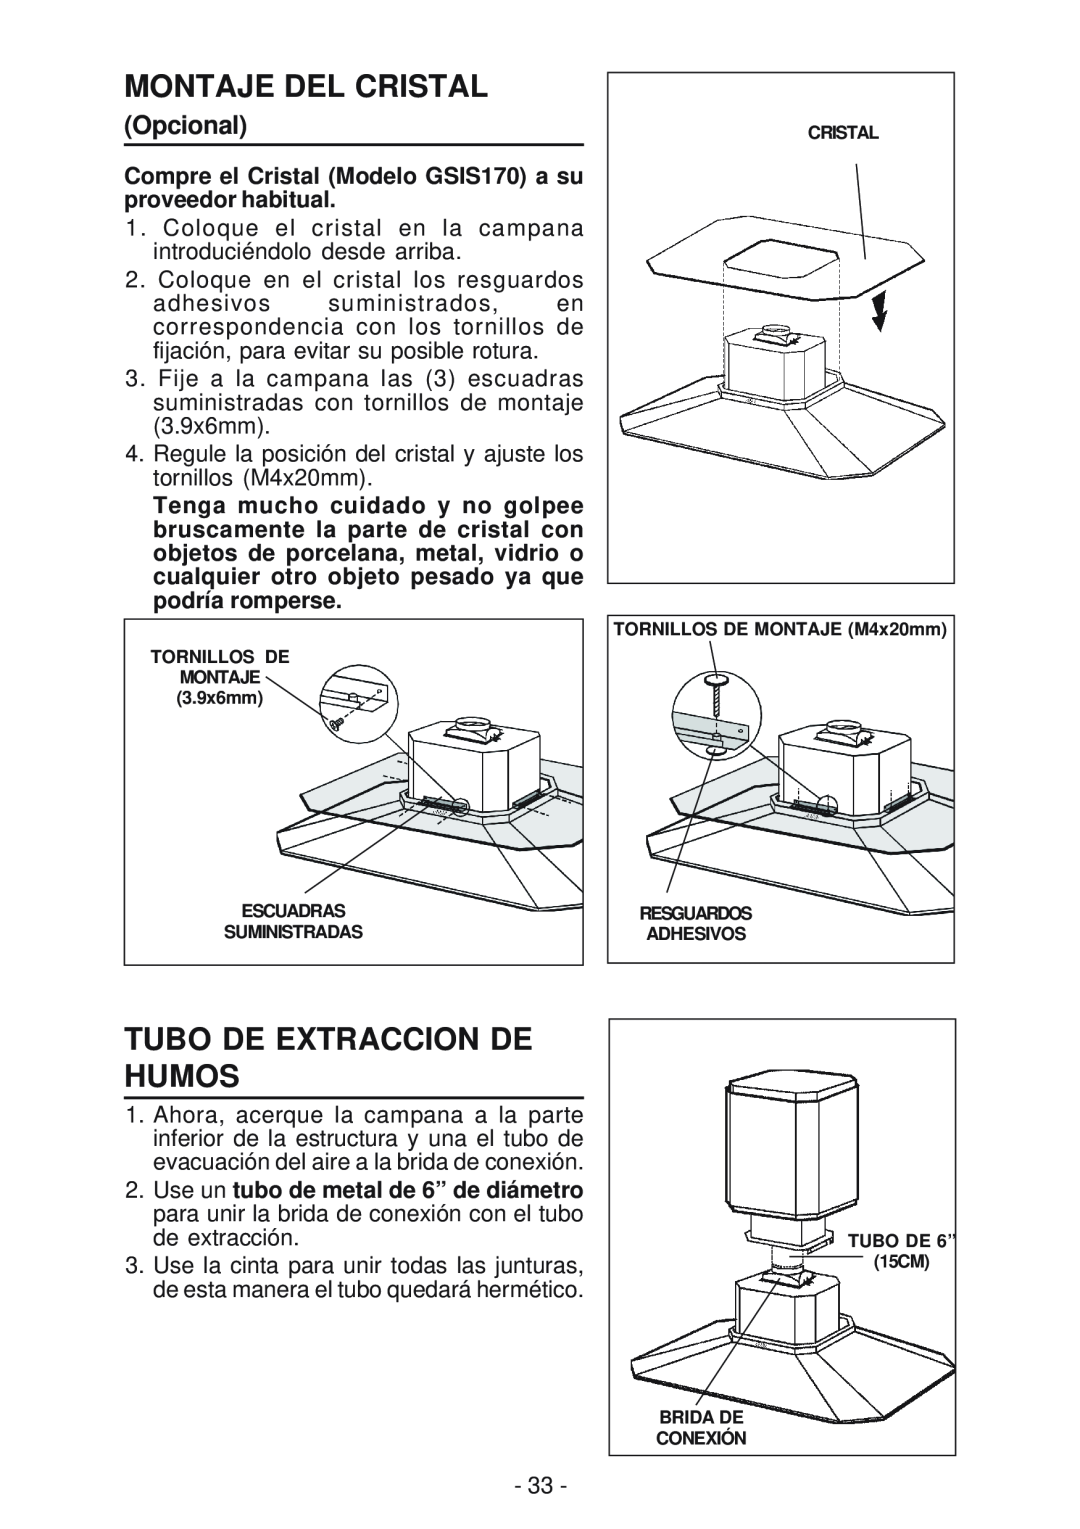 Best IS170 manual Montaje Del Cristal, Tubo De Extraccion De Humos, Opcional 